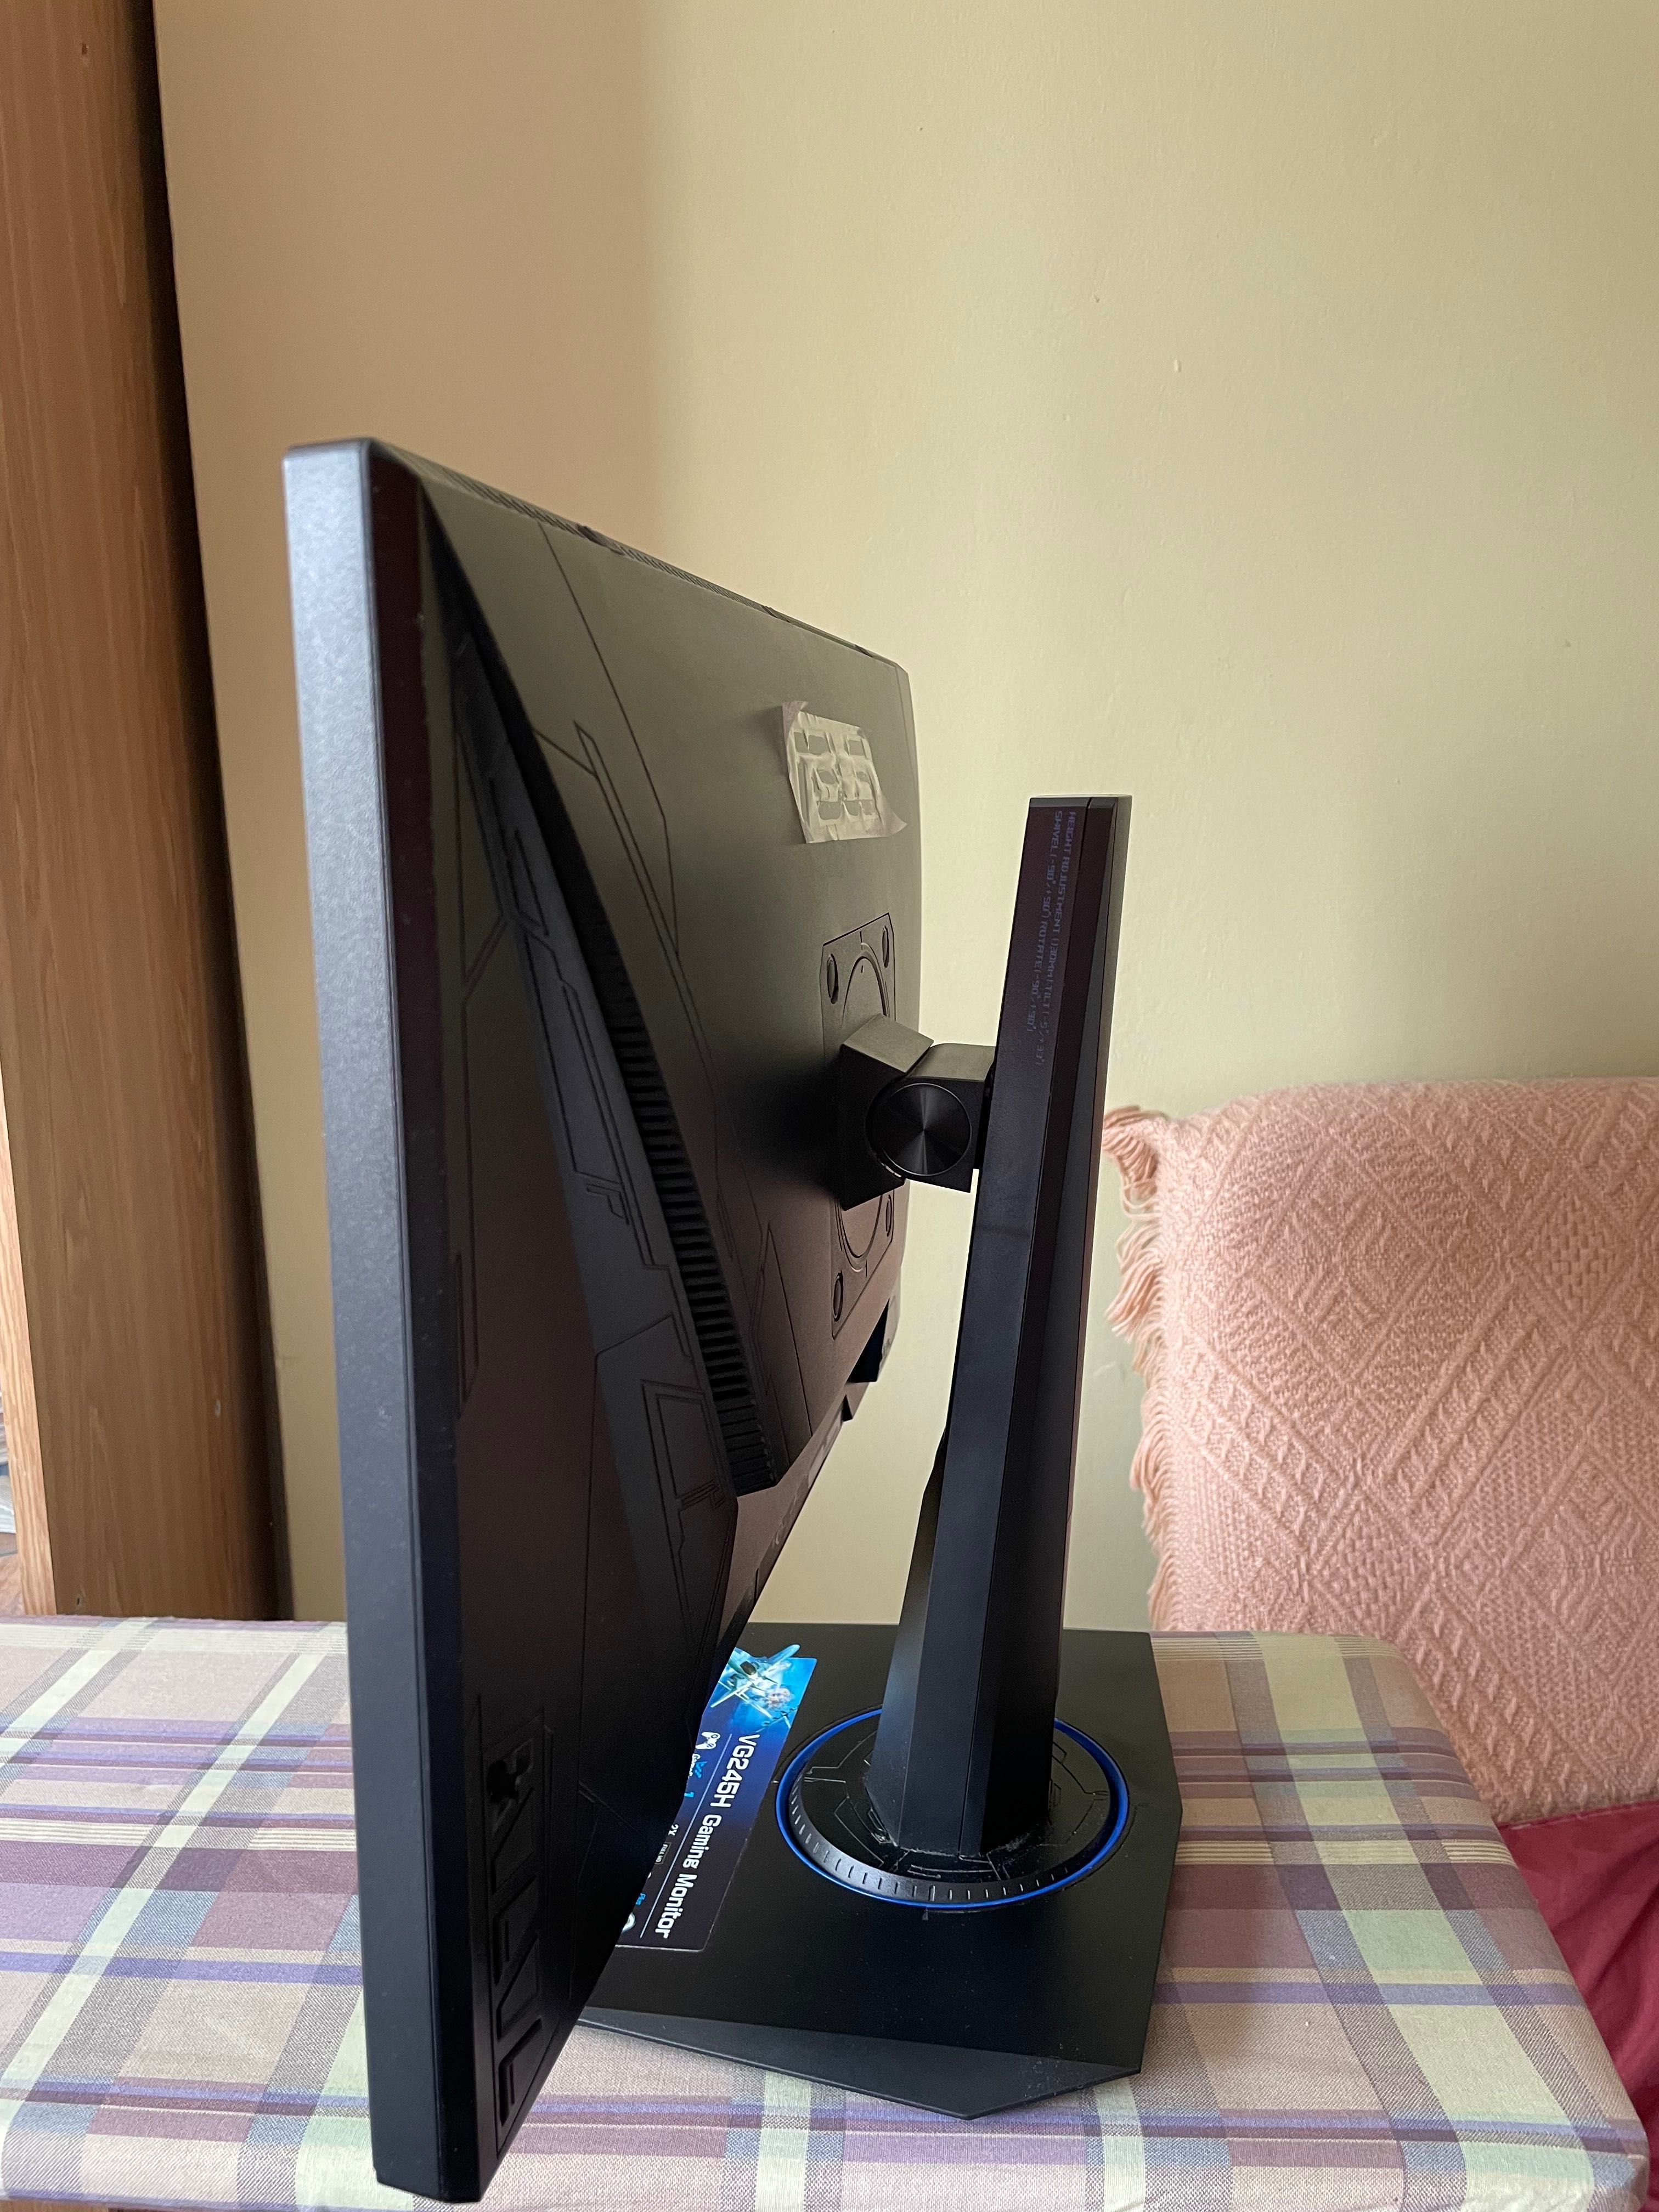 Asus VG245H 24” Gaming Monitor